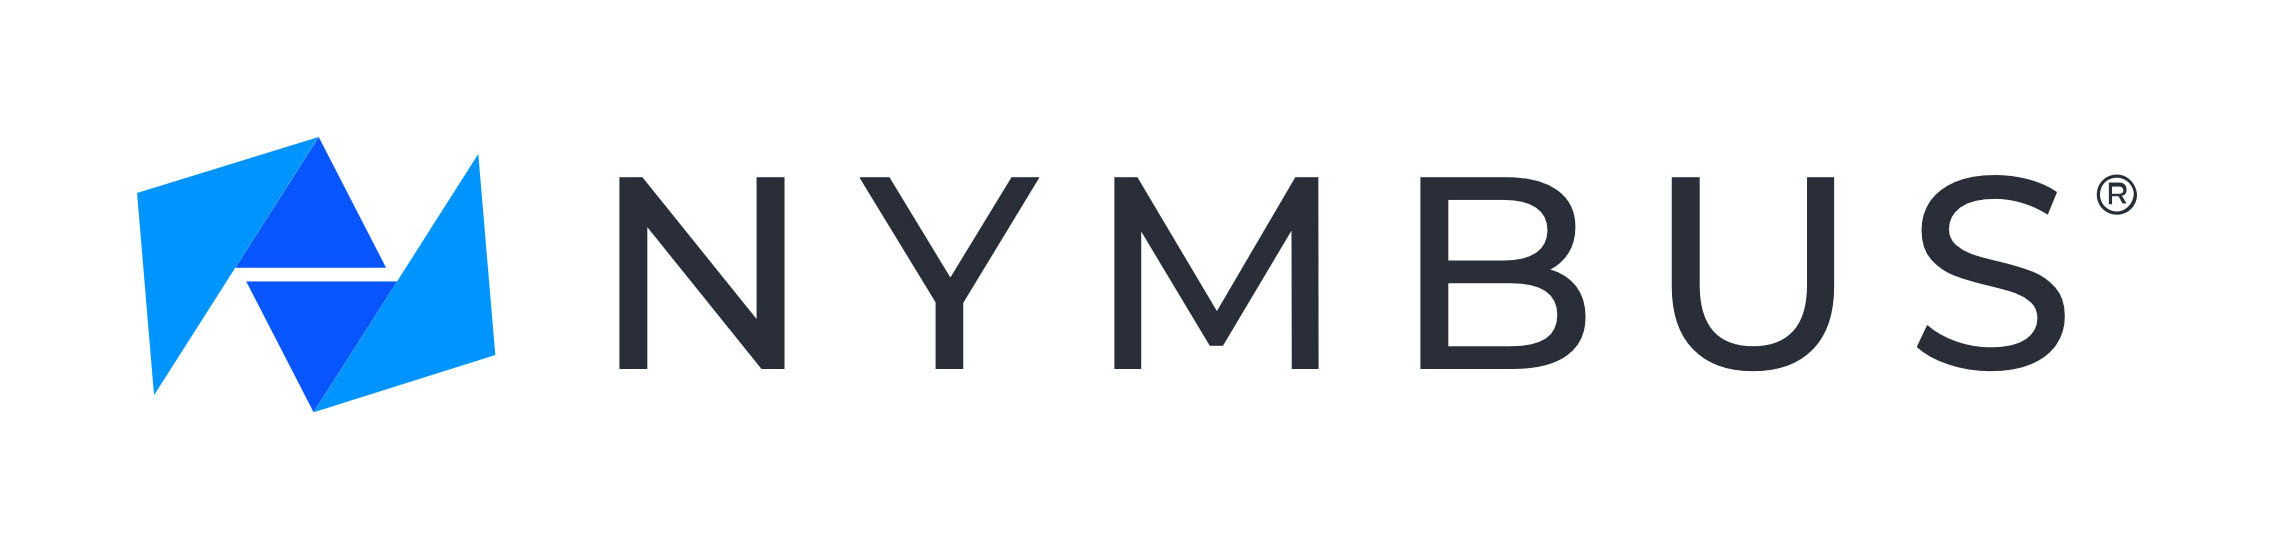 VyStar Credit Union Selects Nymbus as Digital Banking Partner